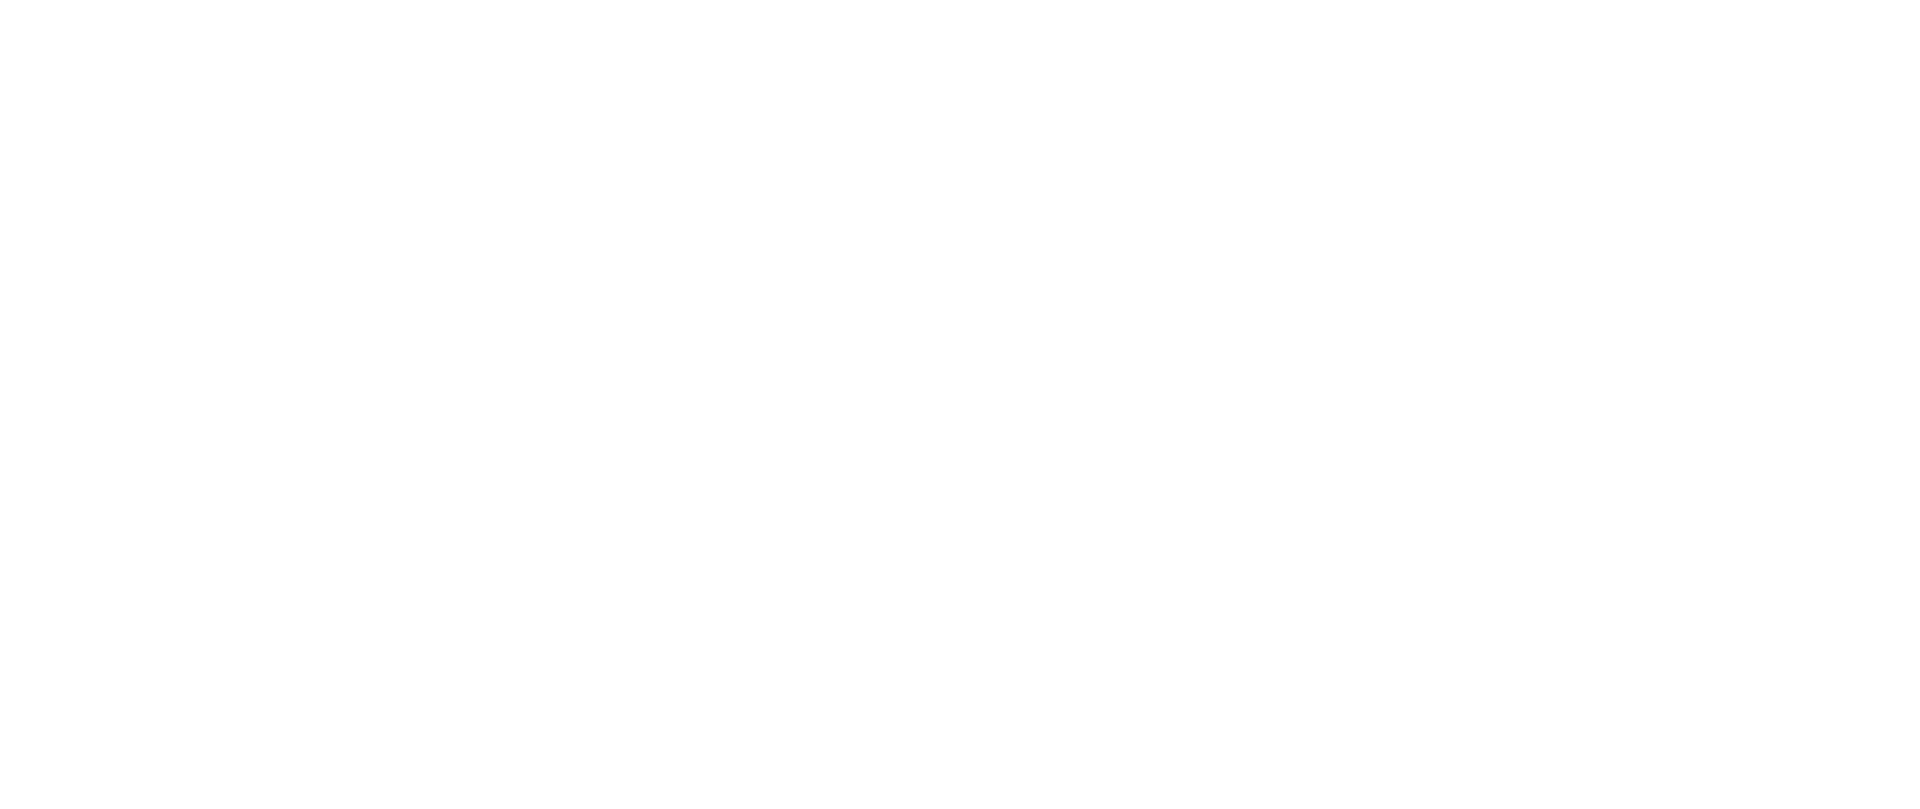 Pandolfi Landscape Construction